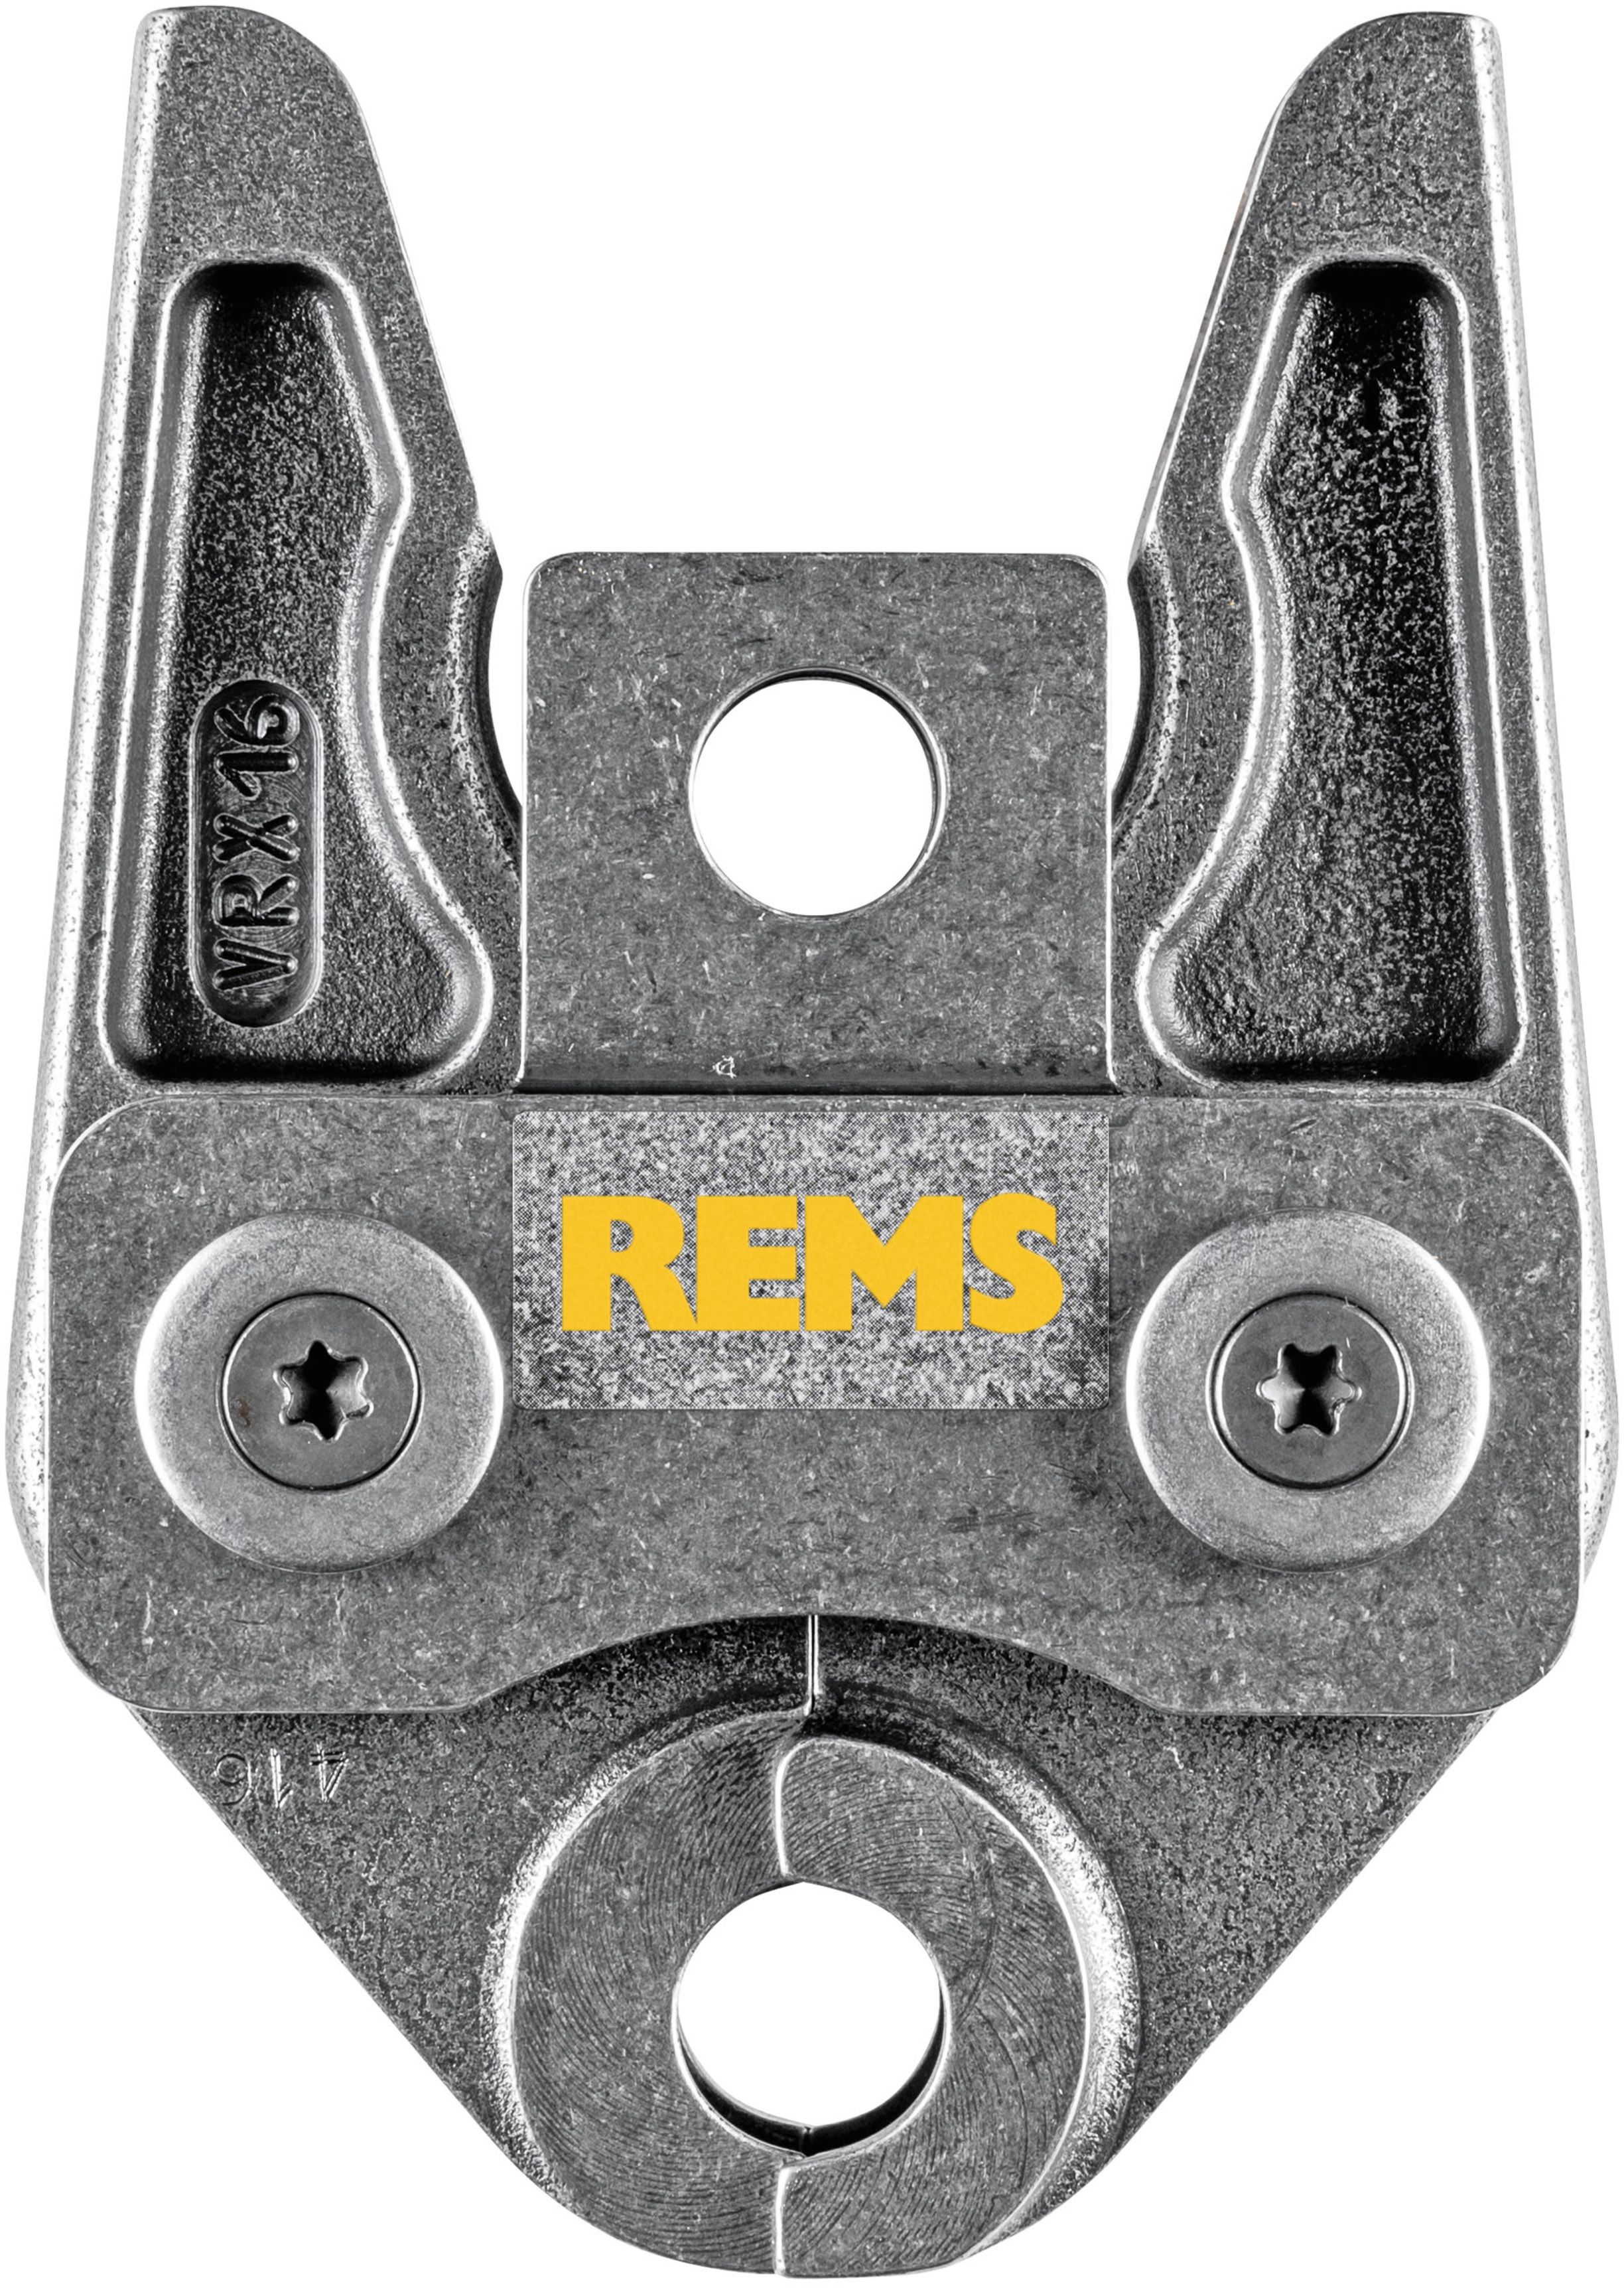 REMS Presszange 571750, VRX 16 - Sanitärwerkzeuge